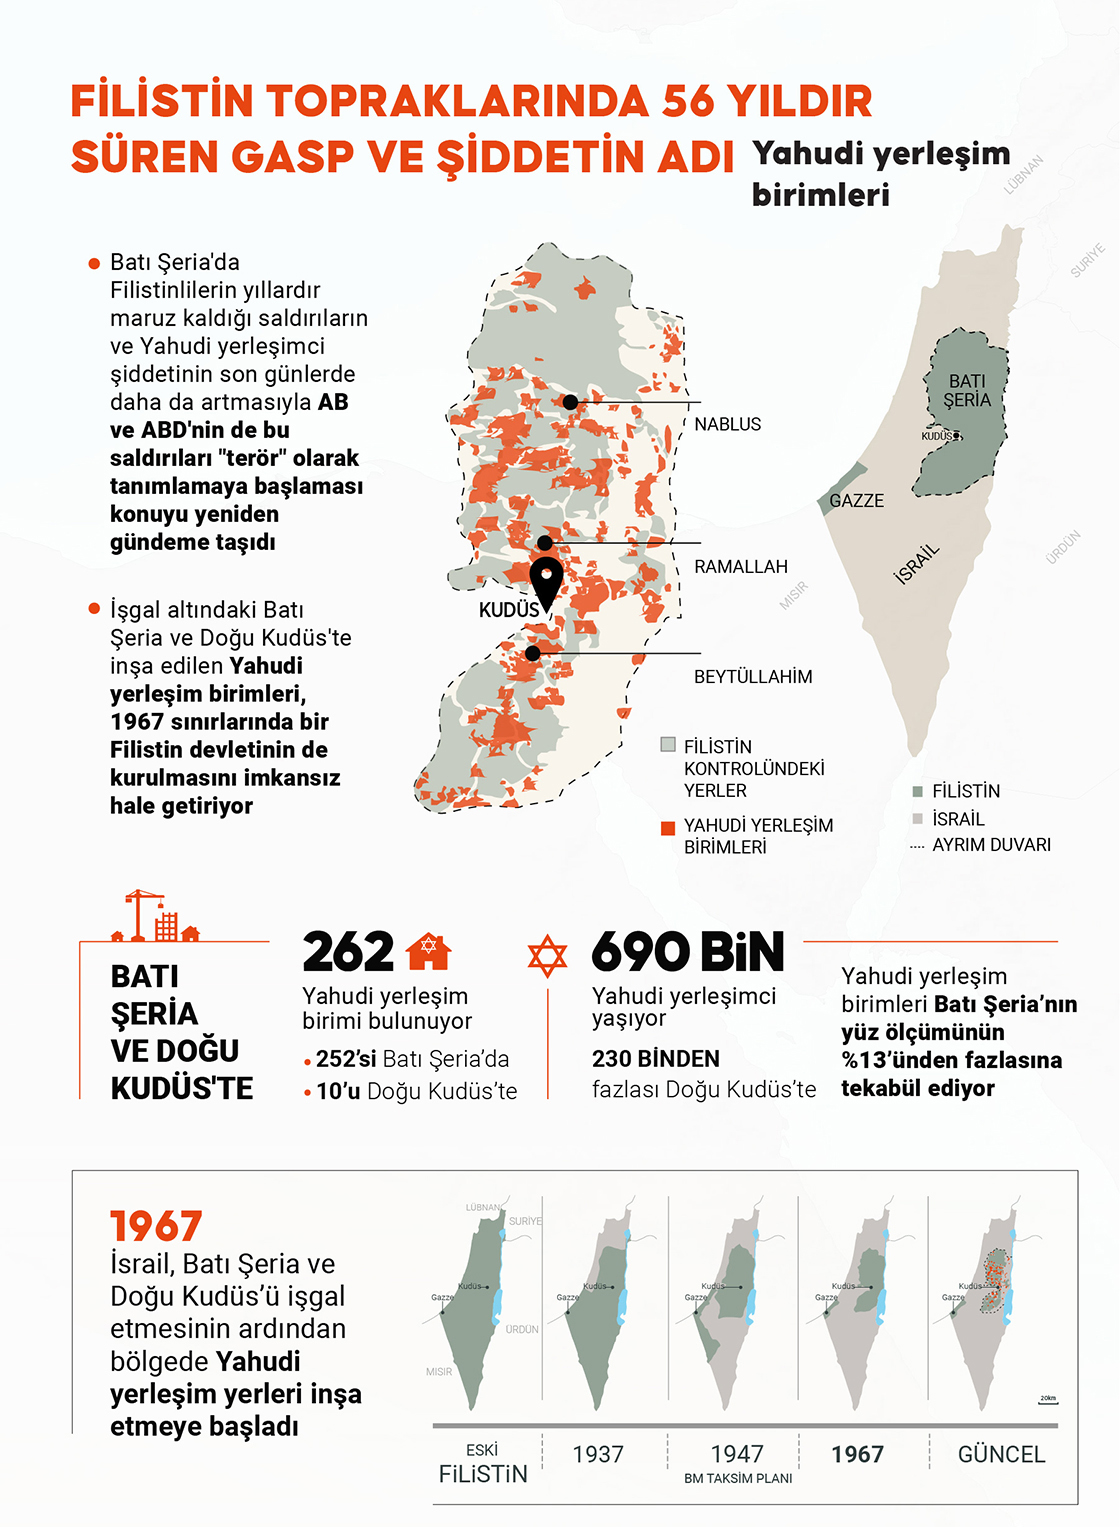 Filistin topraklarında 56 yıldır süren gasp ve şiddet!